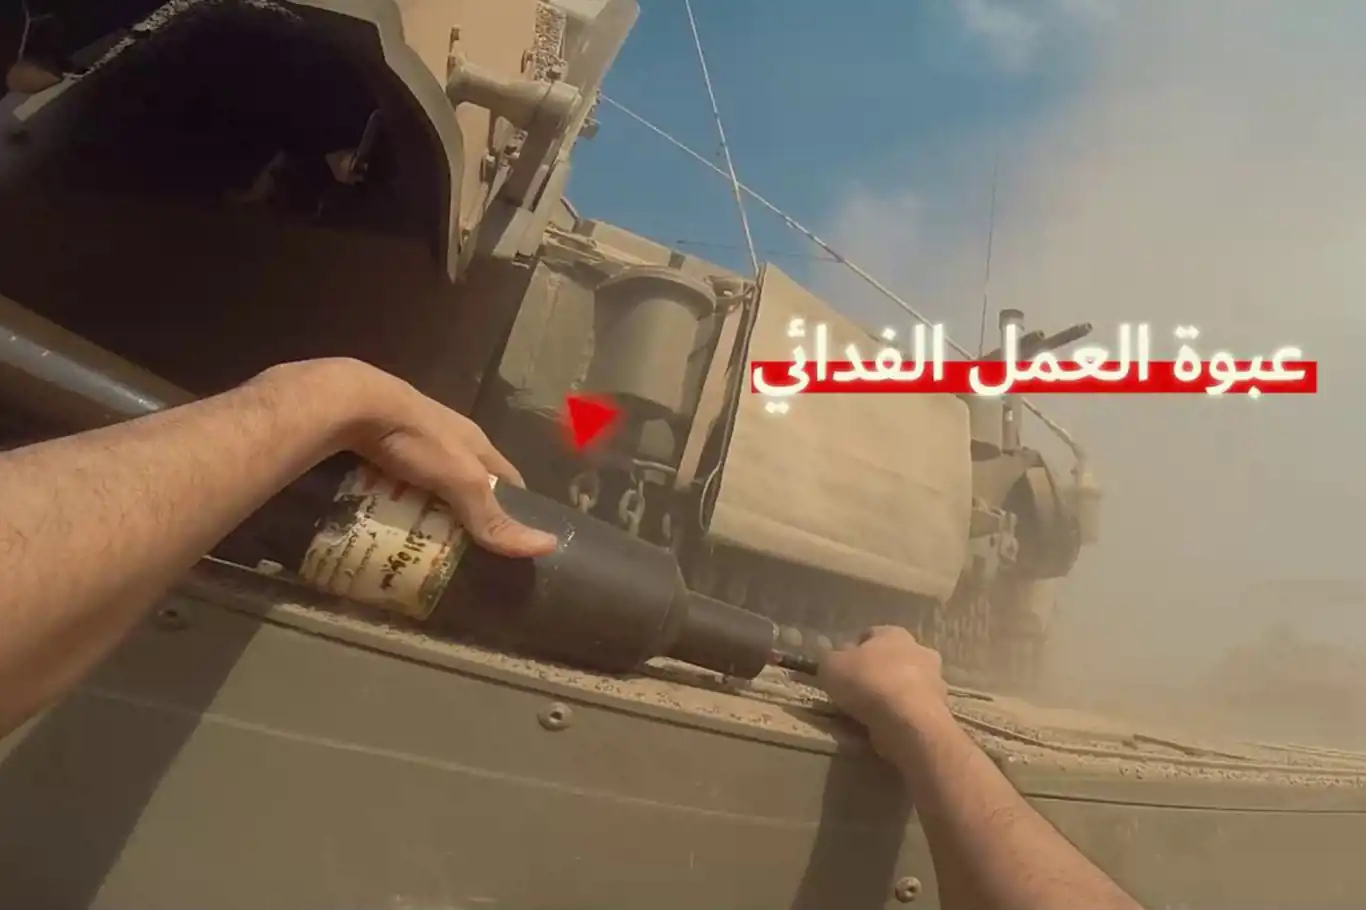 Kassam mücahidi işgal tankının üzerine patlayıcı bırakıyor: "Onlar artık göremezler"